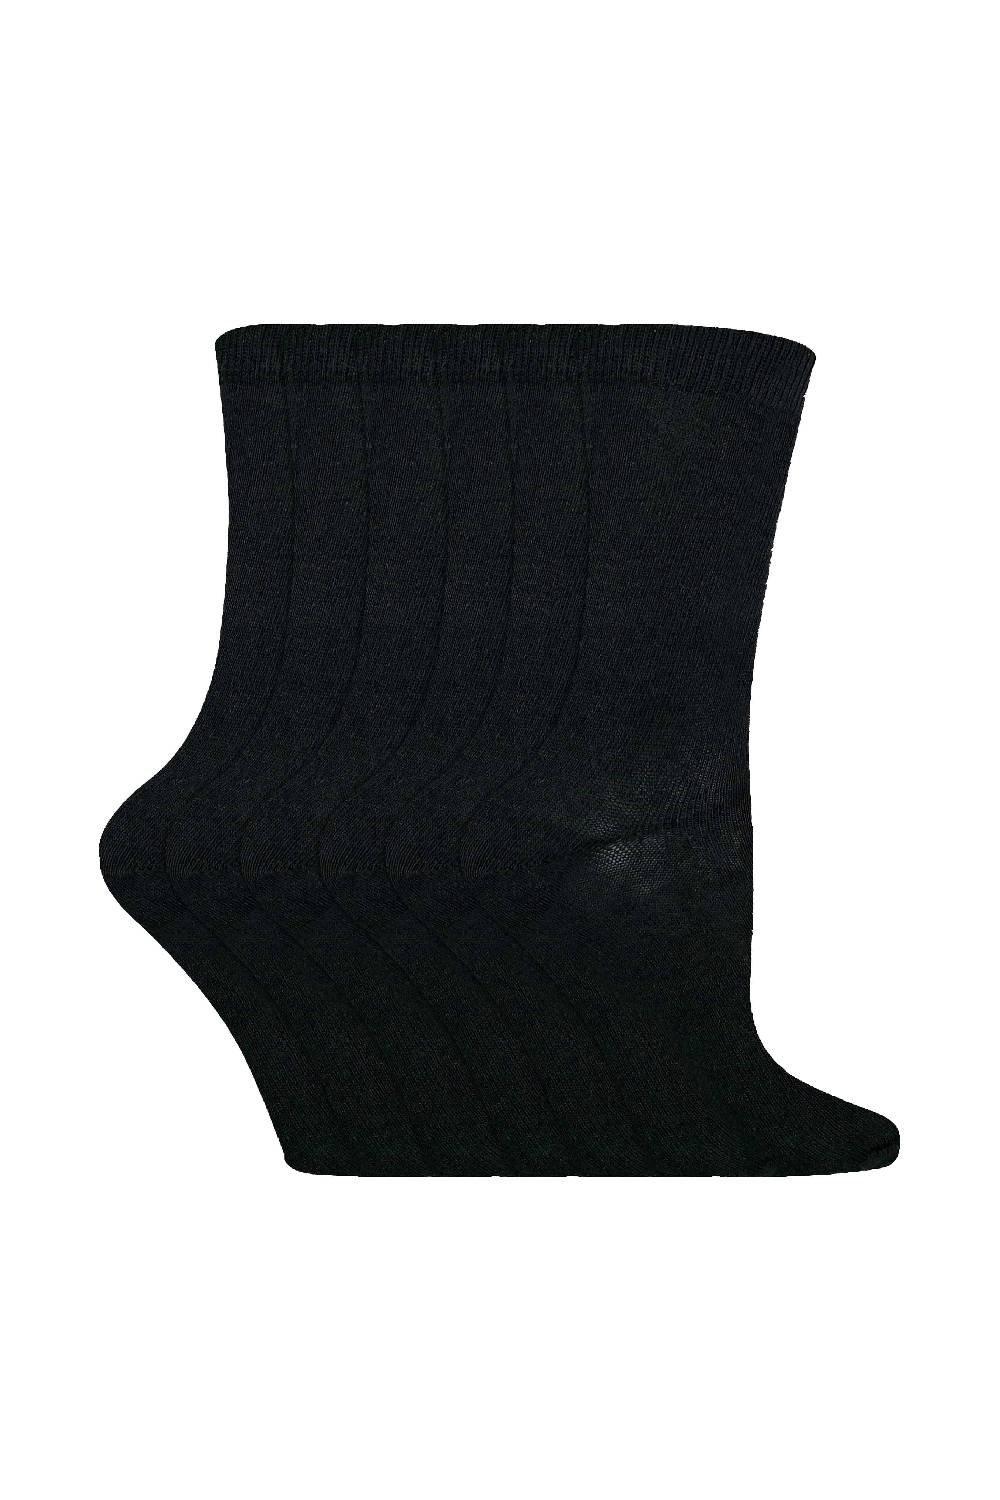 6 пар однотонных повседневных хлопковых носков Sock Snob, черный